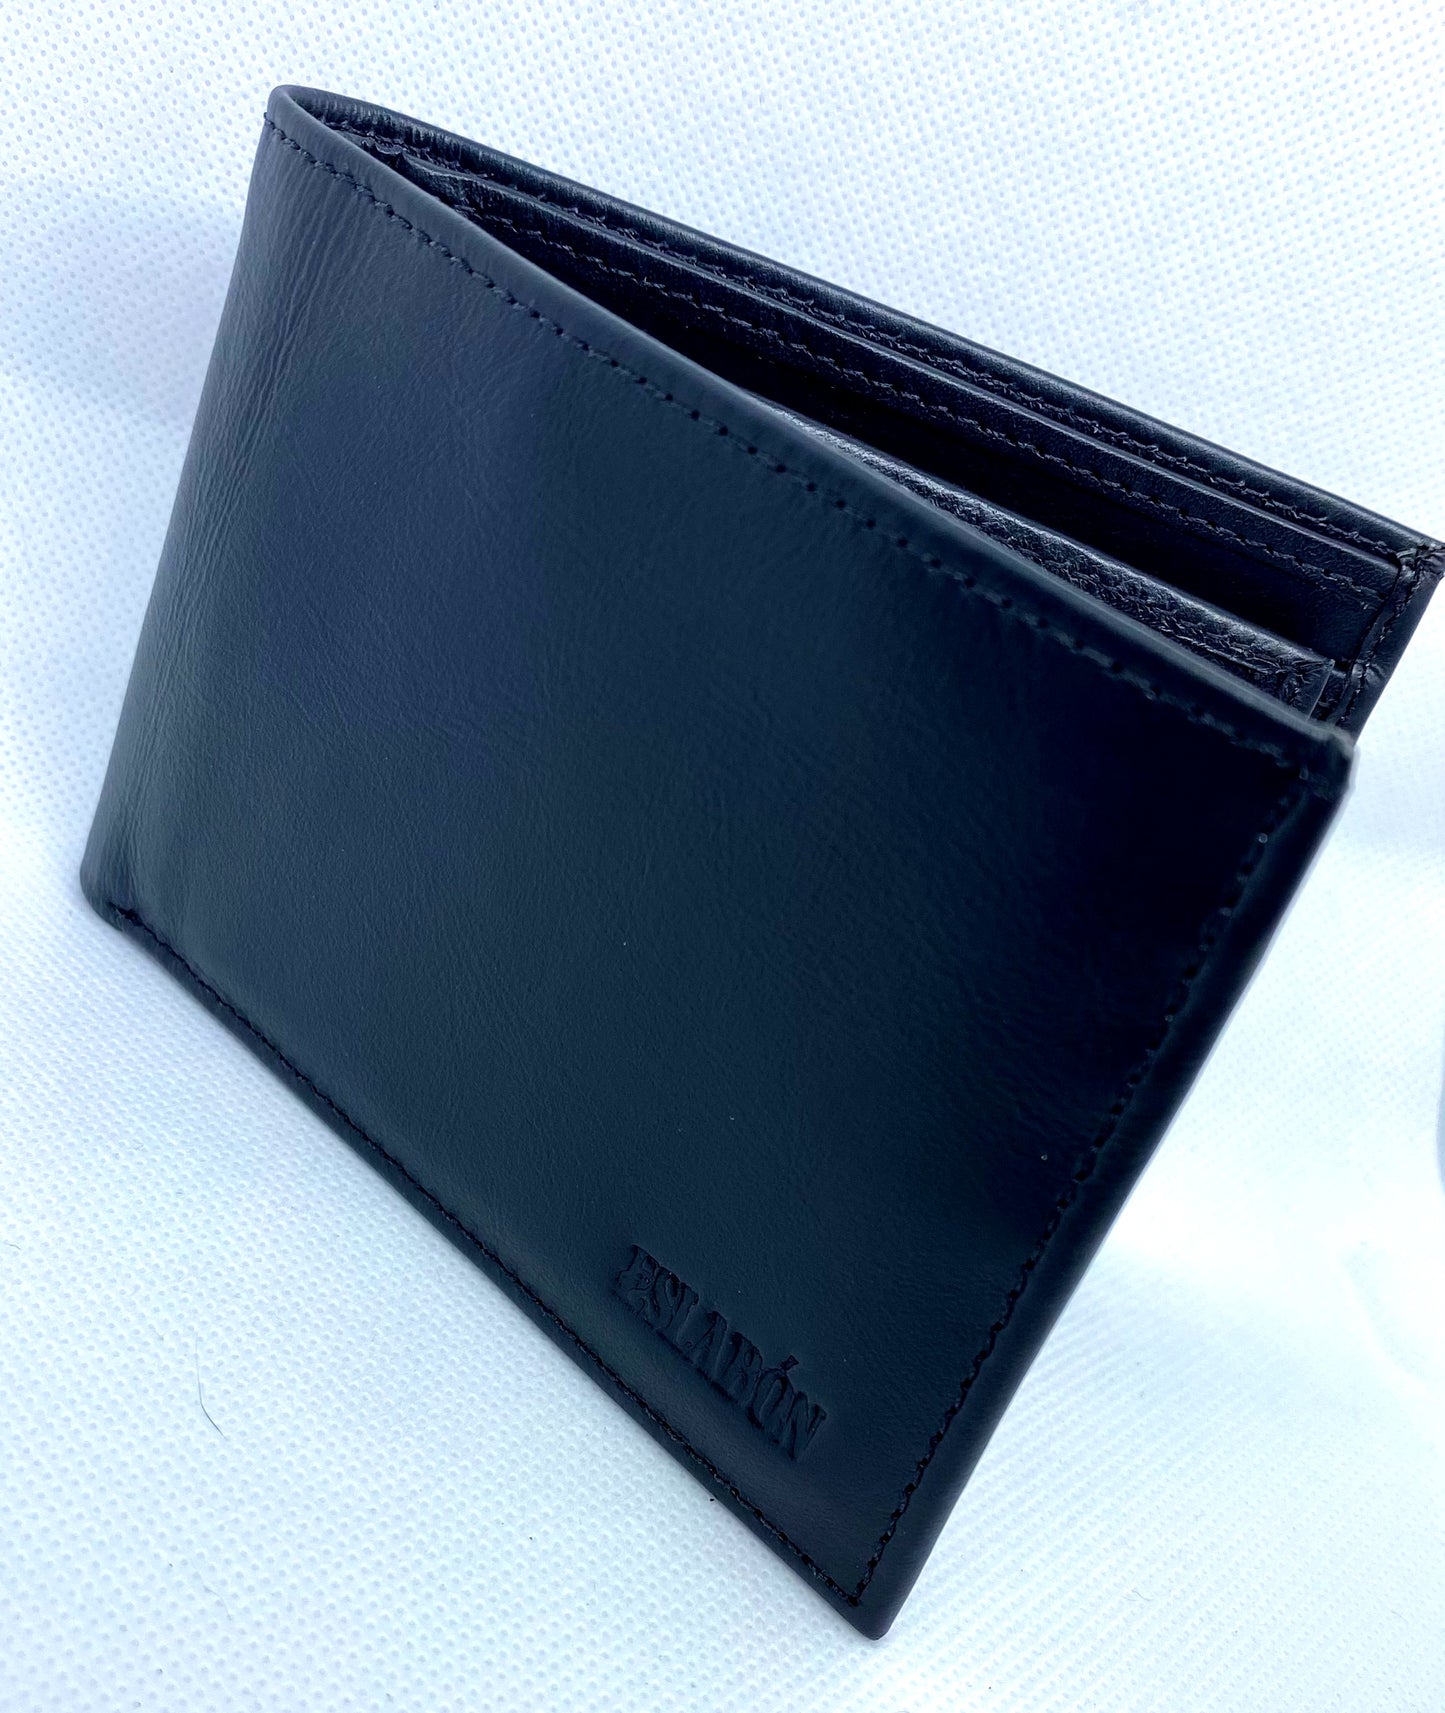 Billetera de cuero color Negro